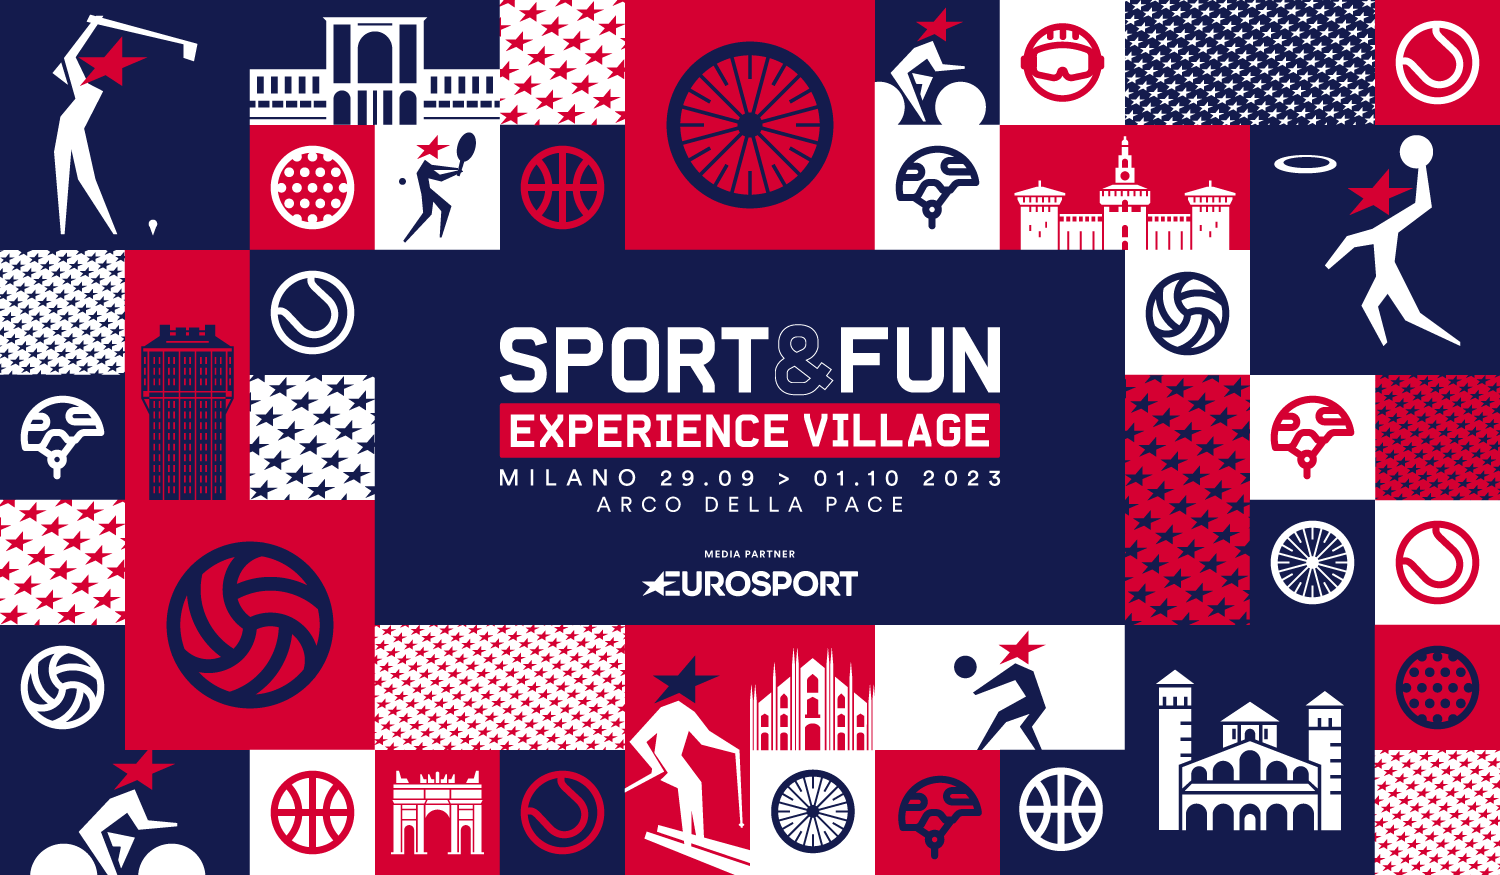 Fra sport  e videogiochi, anche Nintendo è presente alla prima edizione di Sport&Fun Experience Village di Milano!